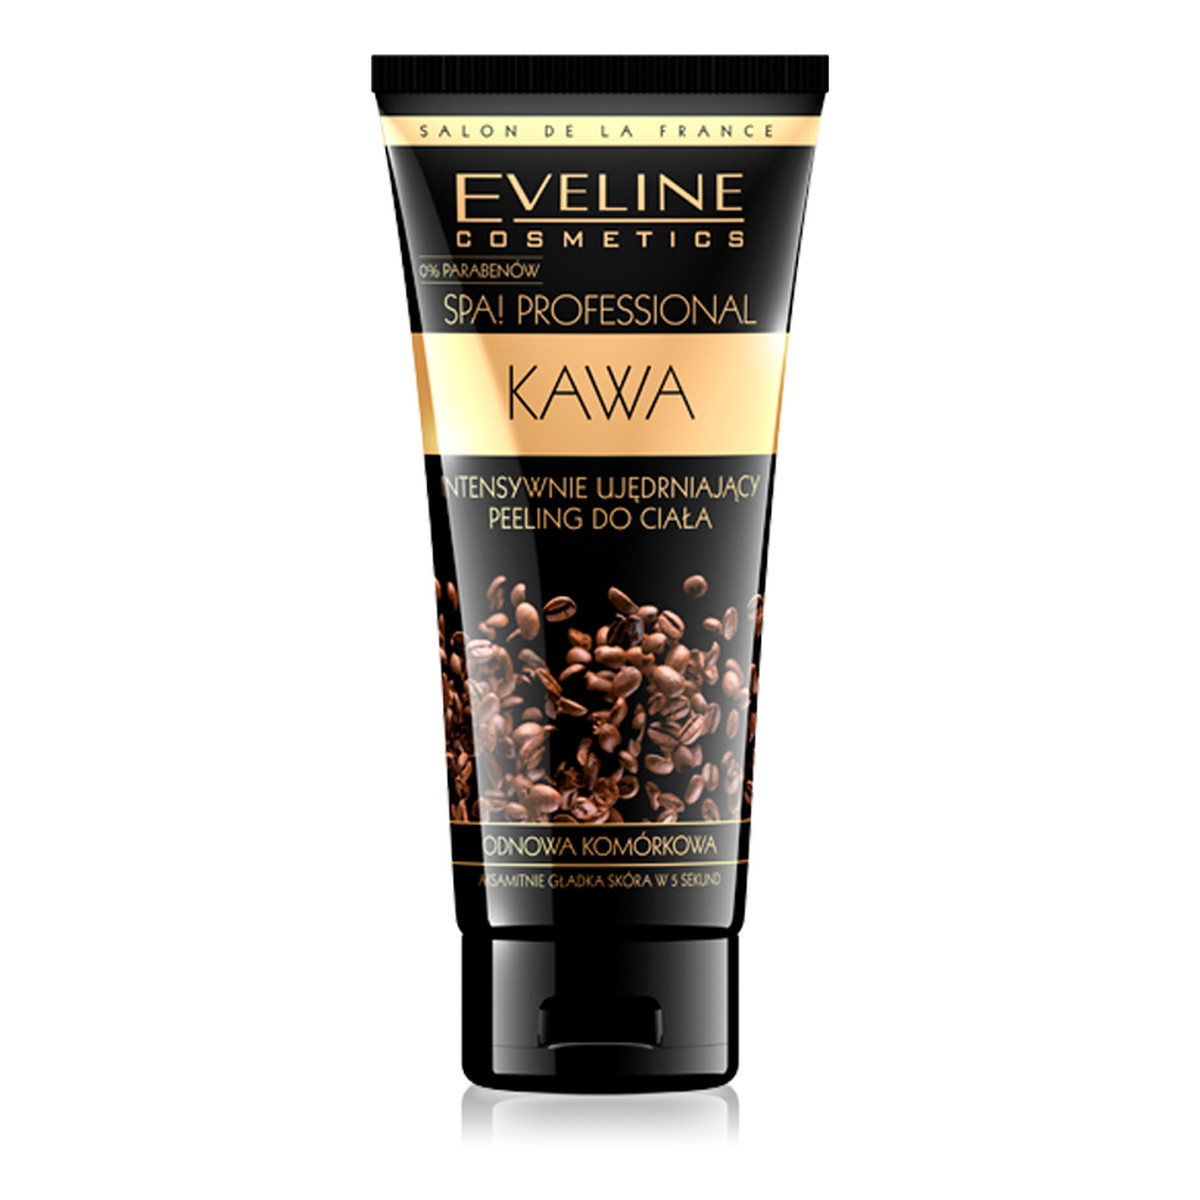 Eveline Spa Professional Kawa Intensywnie Ujędrniający Peeling Do Ciała 200ml